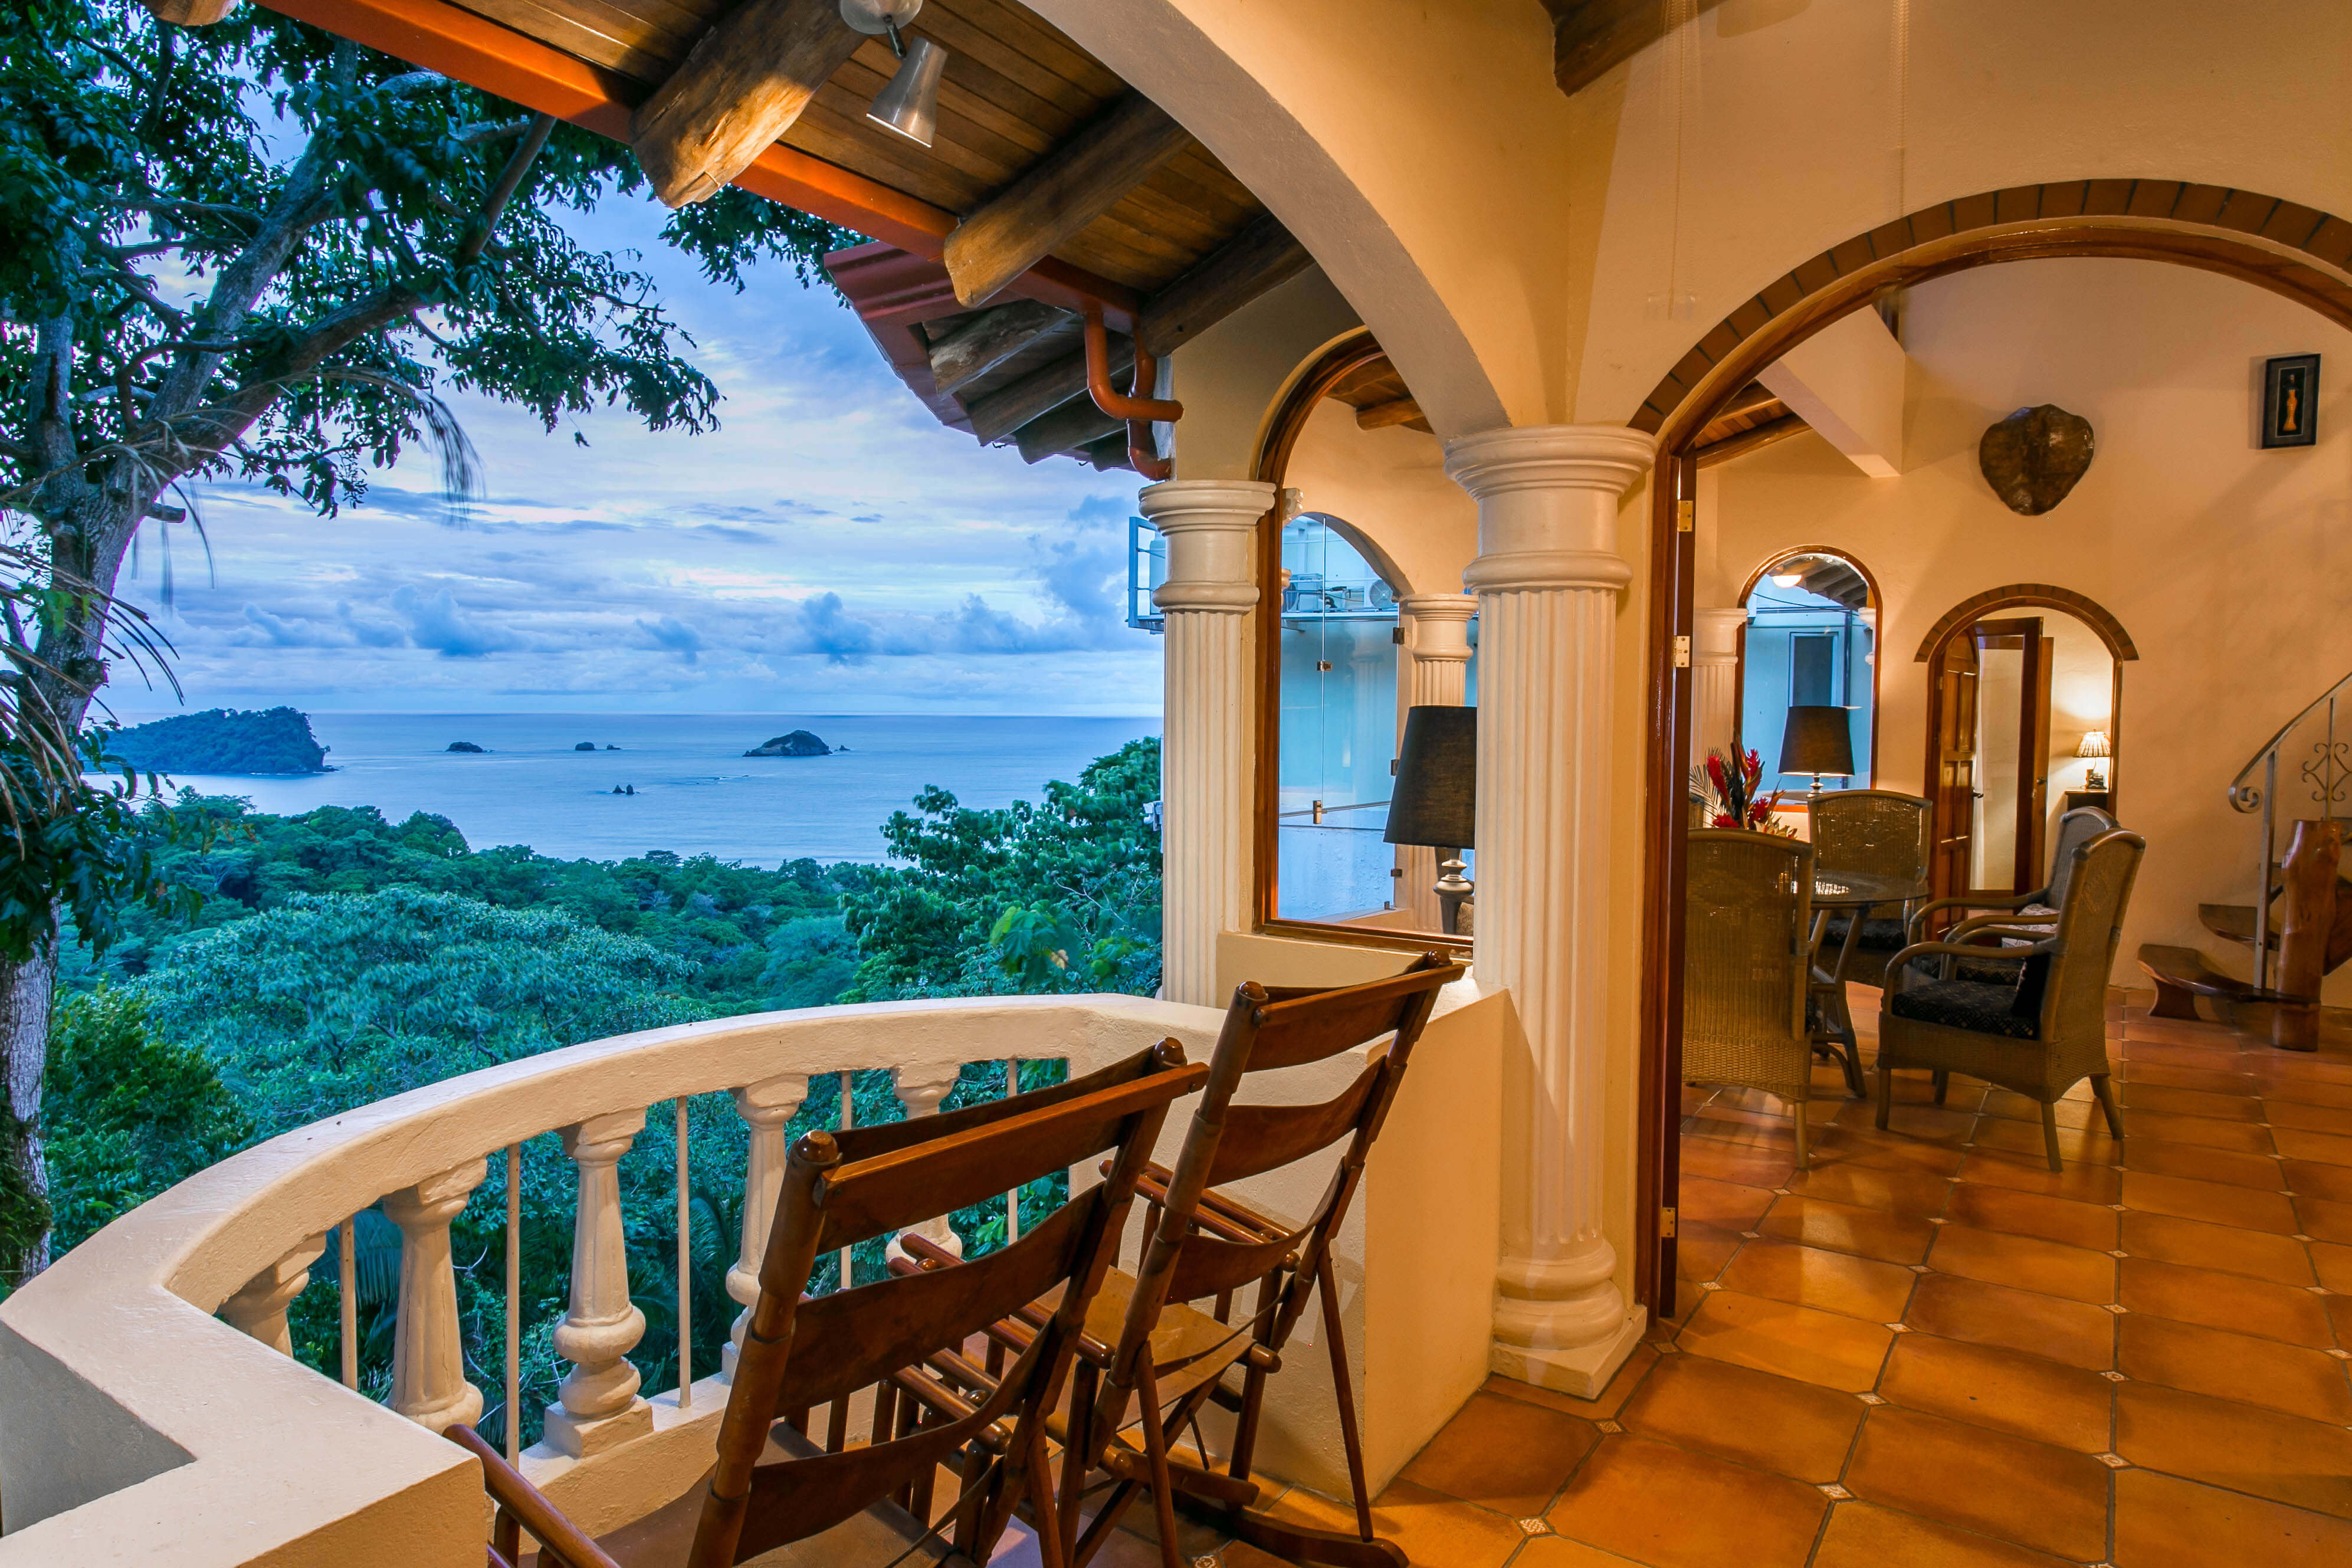 Vacation Villa In Manuel Antonio, Costa Rica | Rental Properties In ...